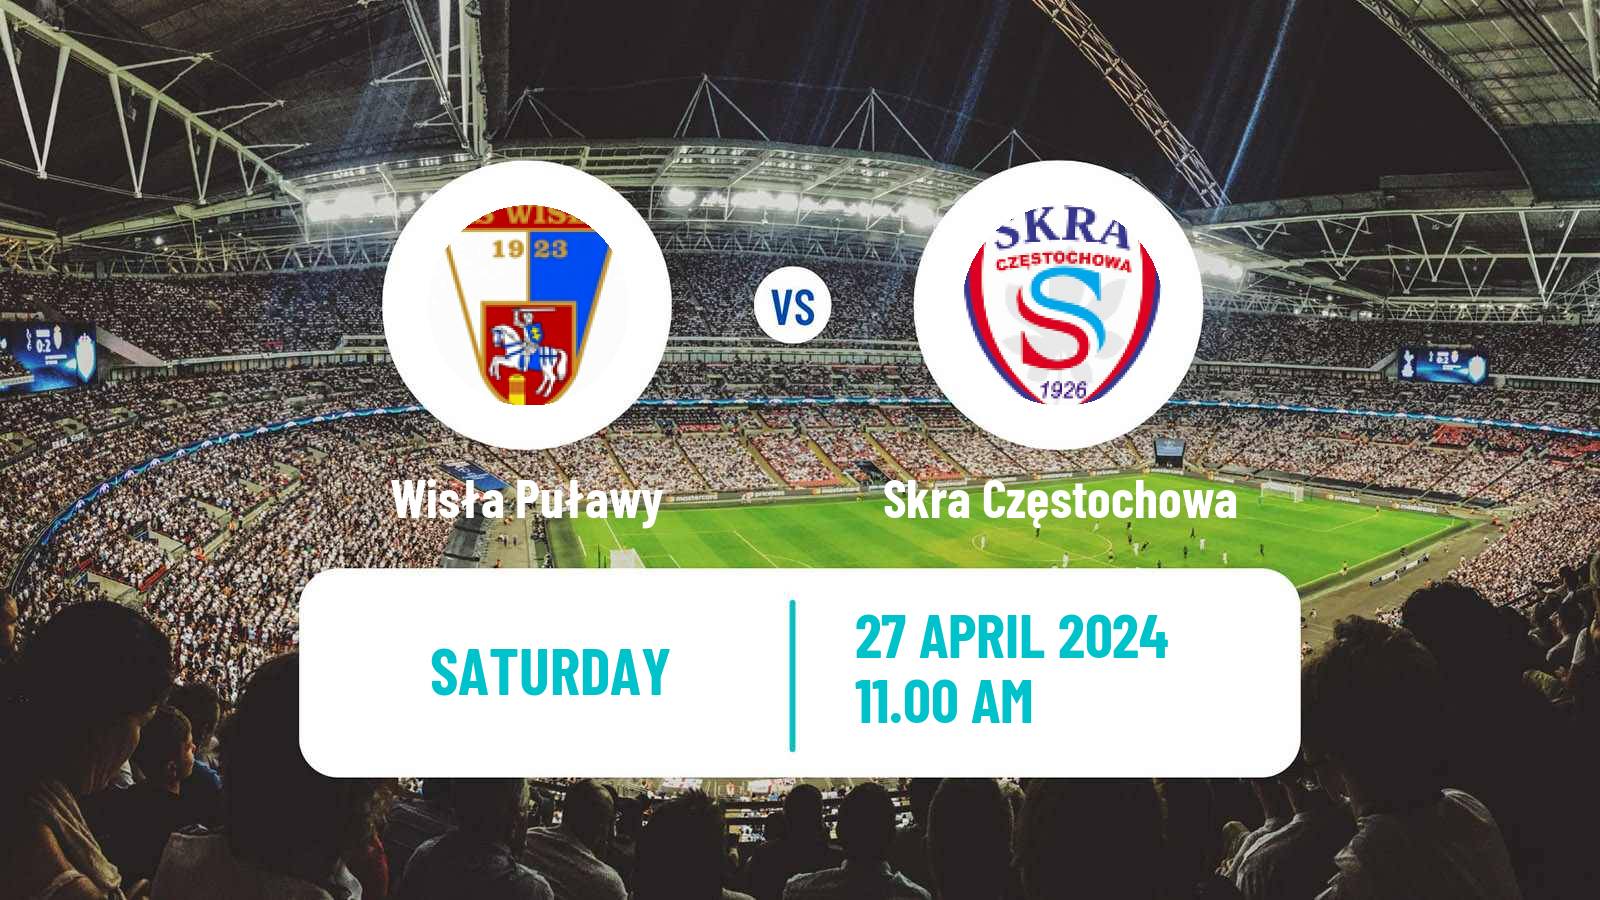 Soccer Polish Division 2 Wisła Puławy - Skra Częstochowa